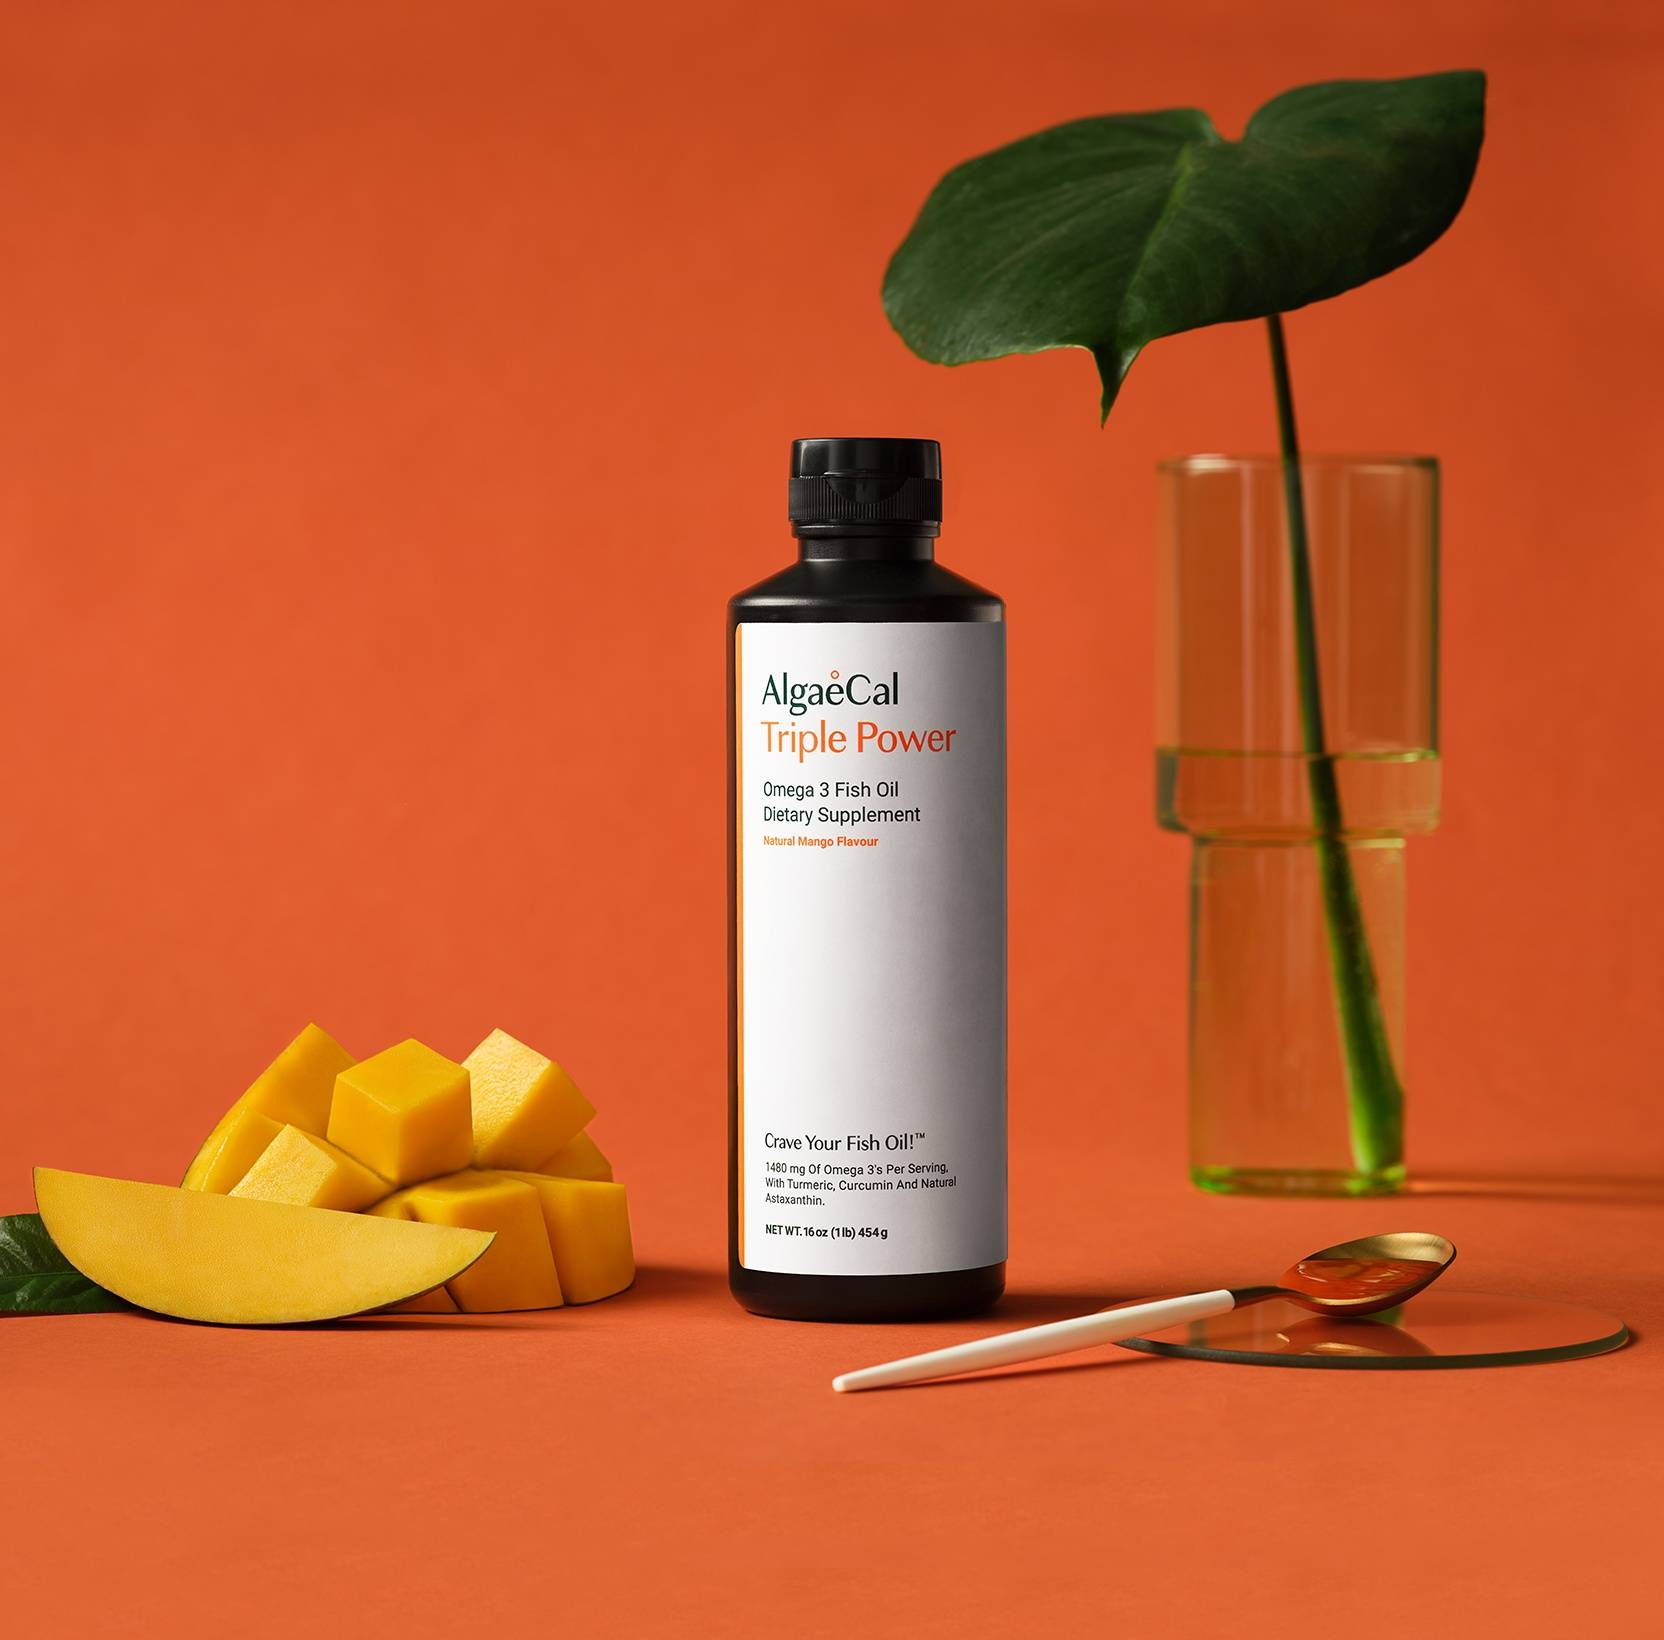 A mango beside a bottle of Triple Power Fish Oil